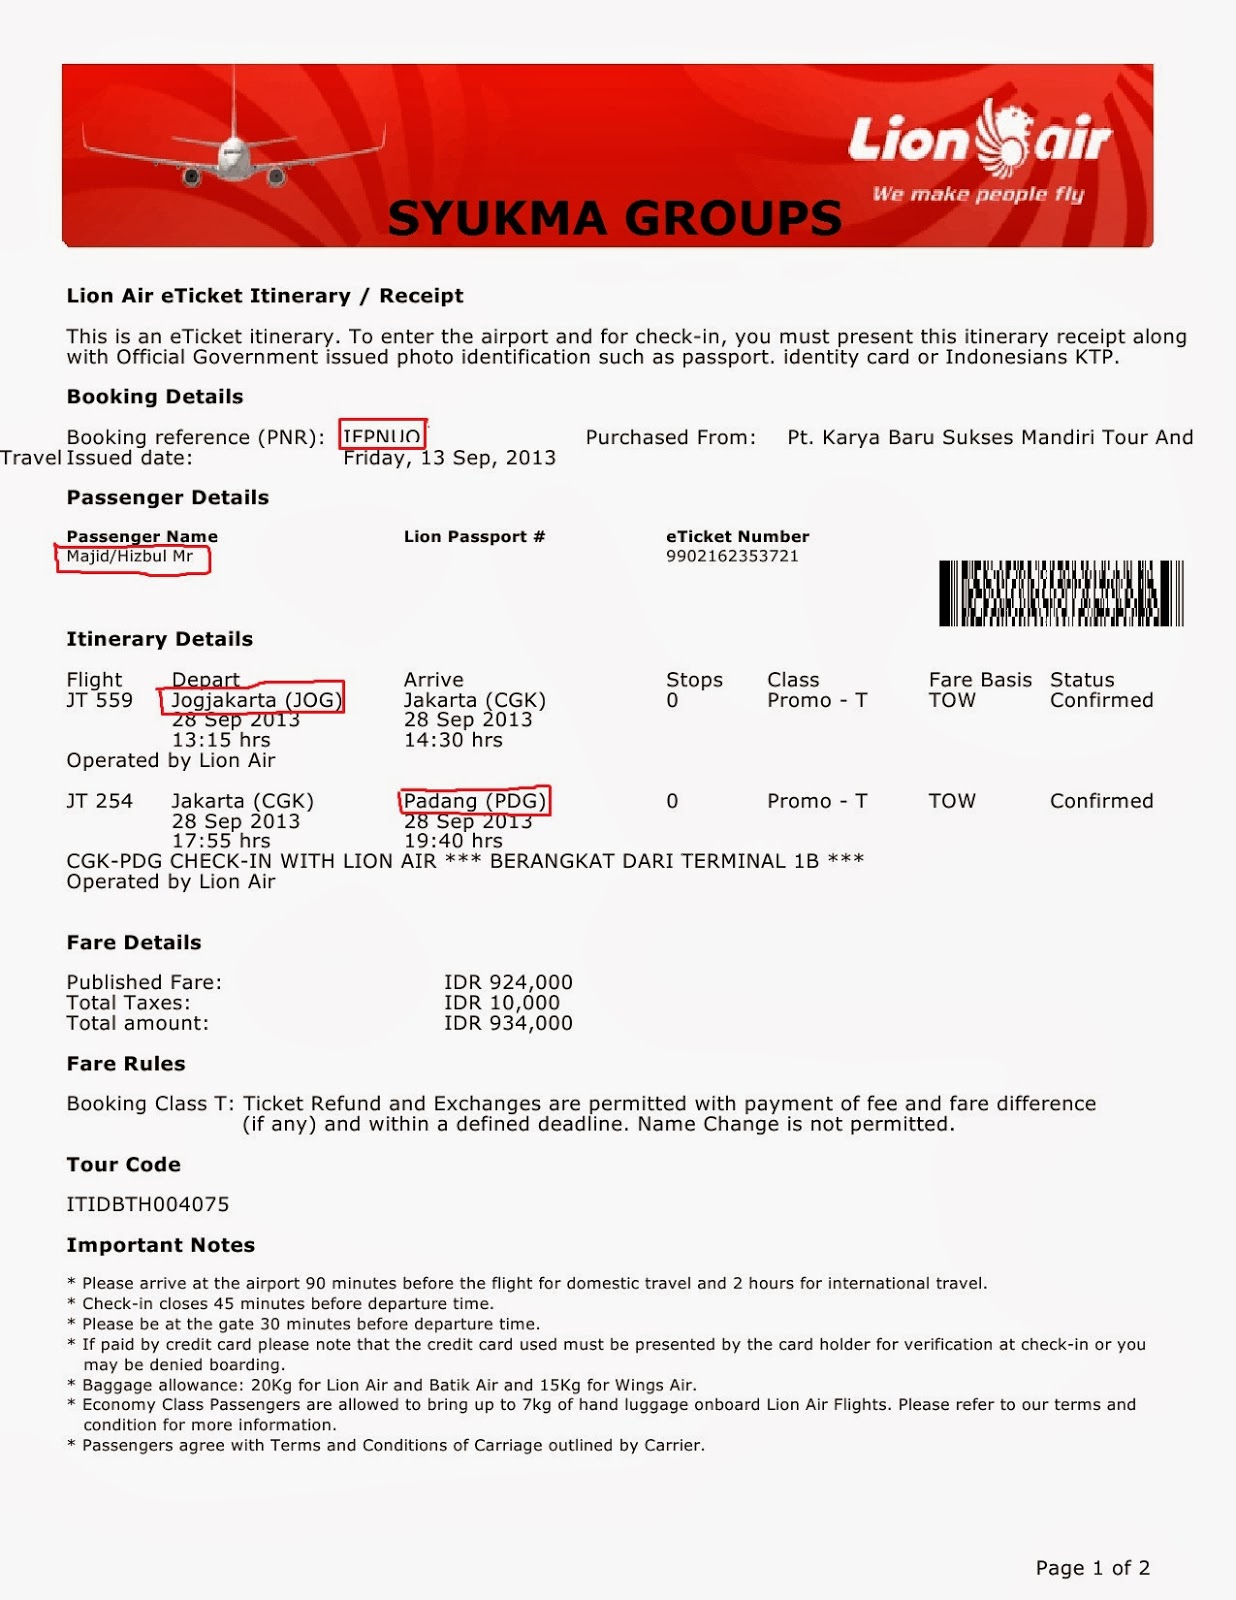  Contoh Tiket Lion Air oleh Syukma Groups